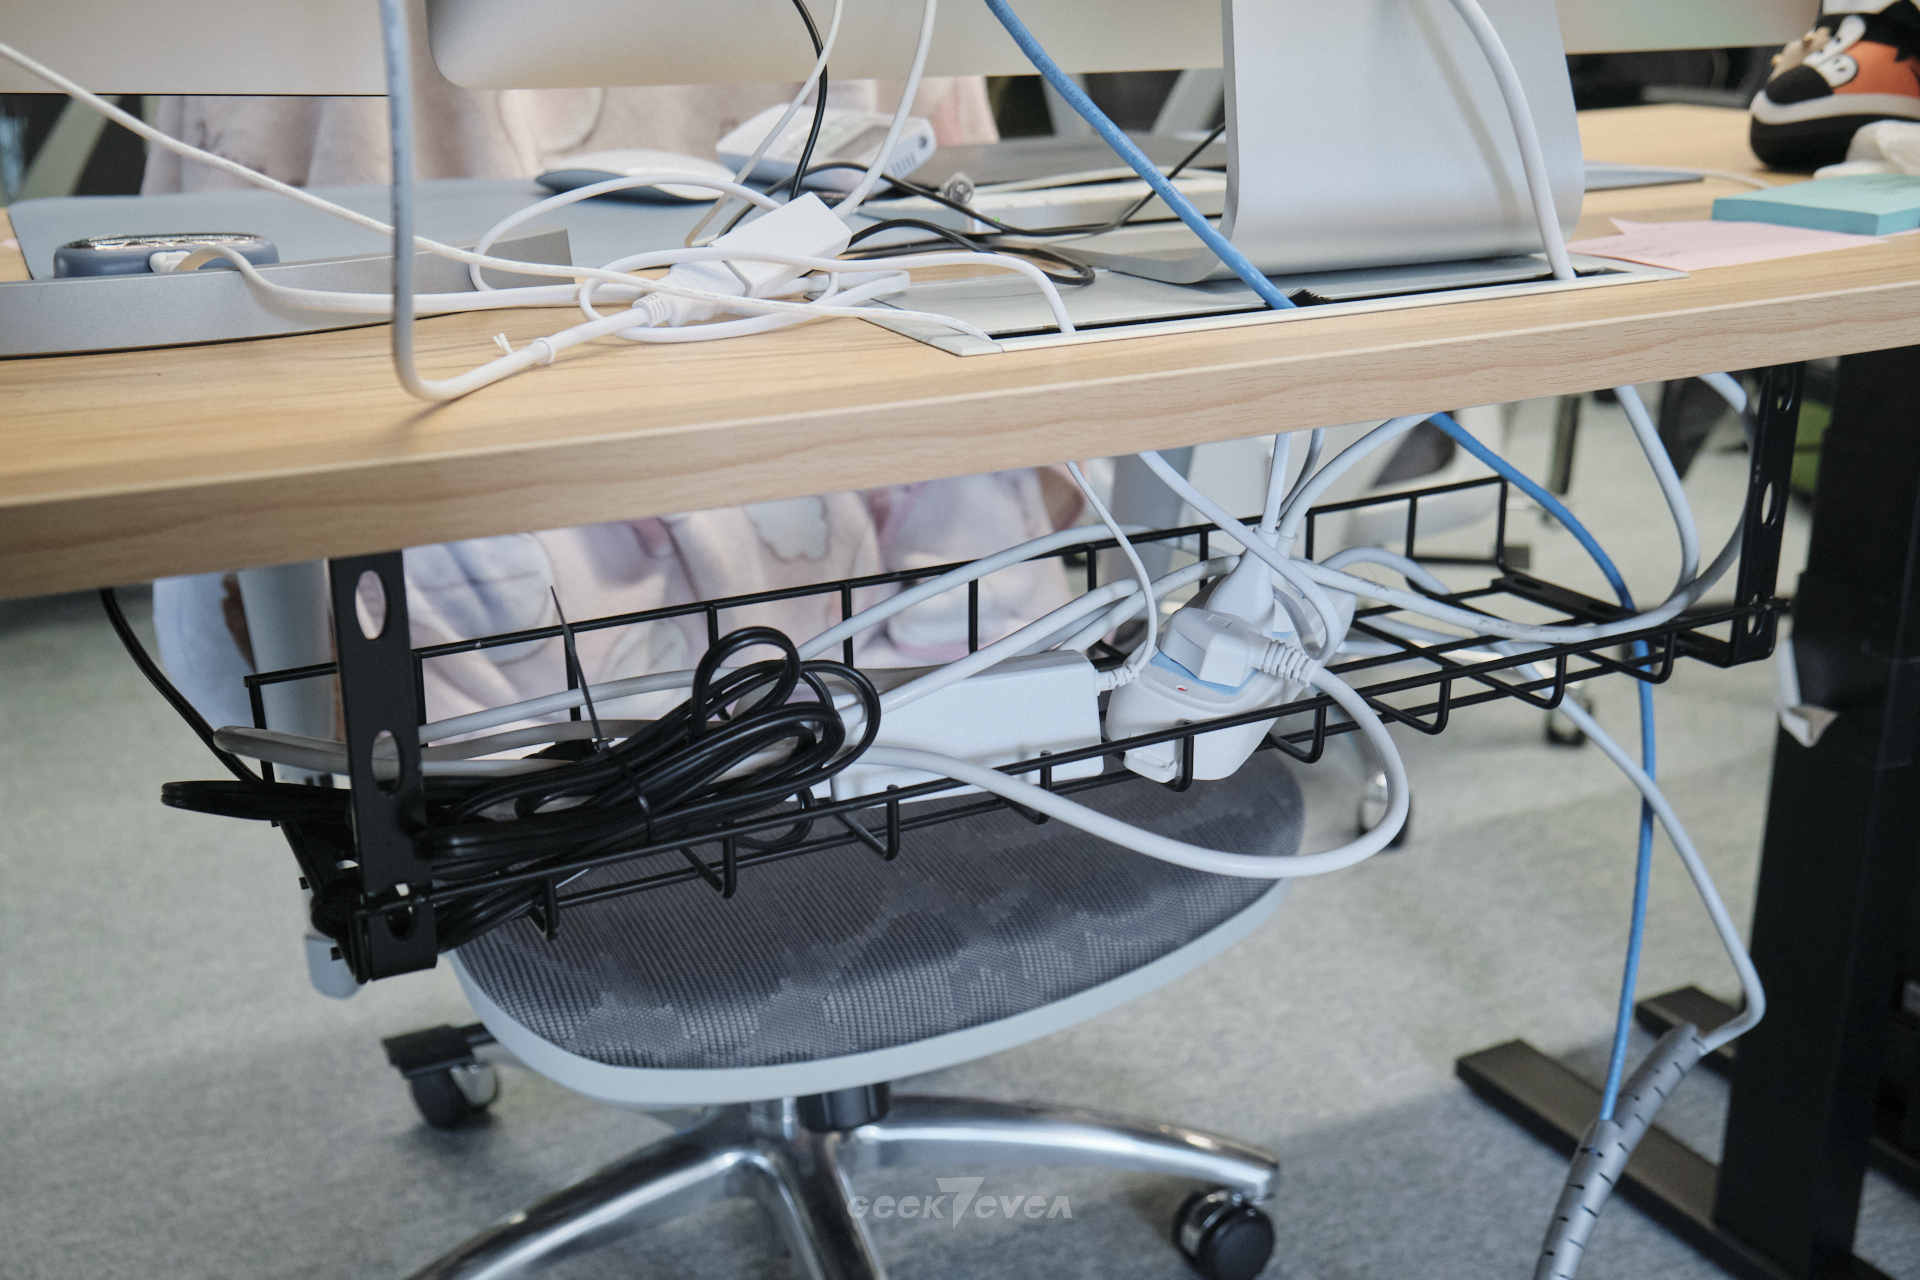 给自己一个舒服干净的办公环境，工位桌搭心得分享